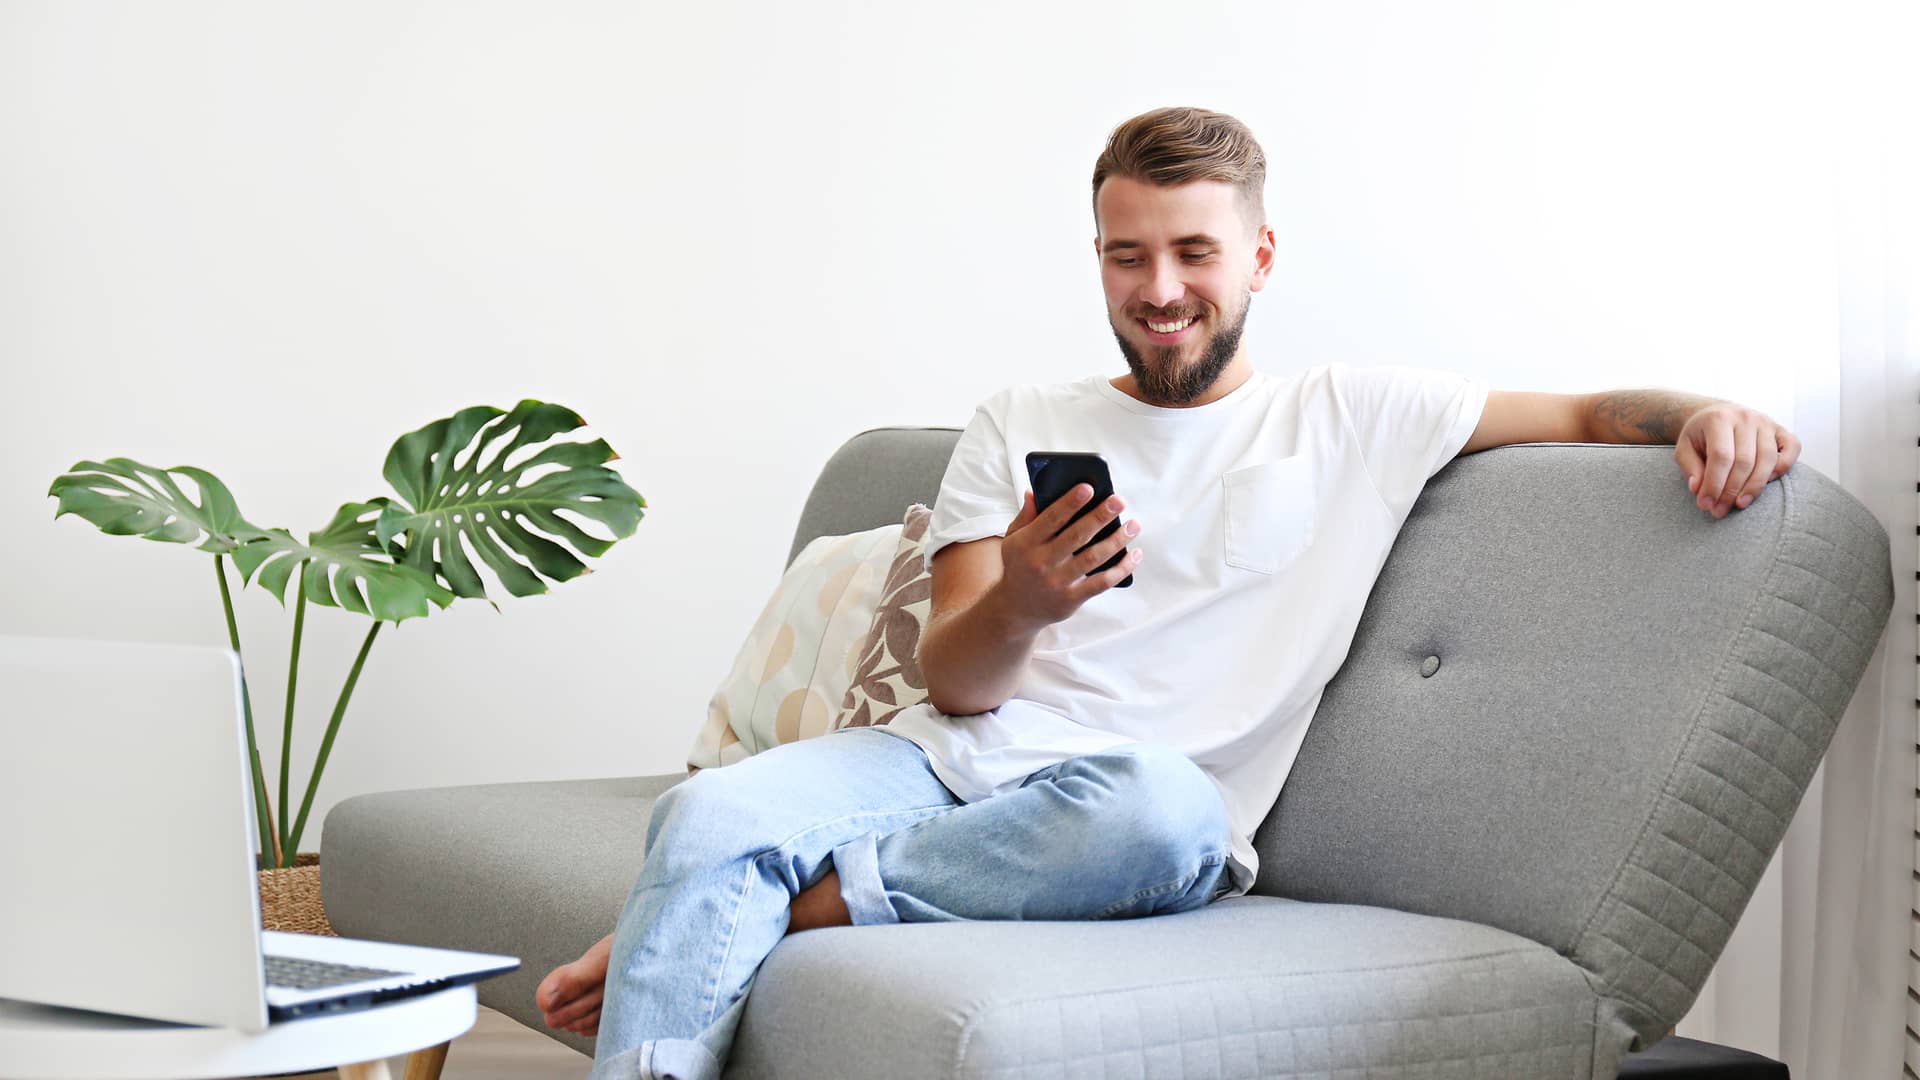 Joven sentado en el sofa usando su smartphone representa tarifas ptvtelecom